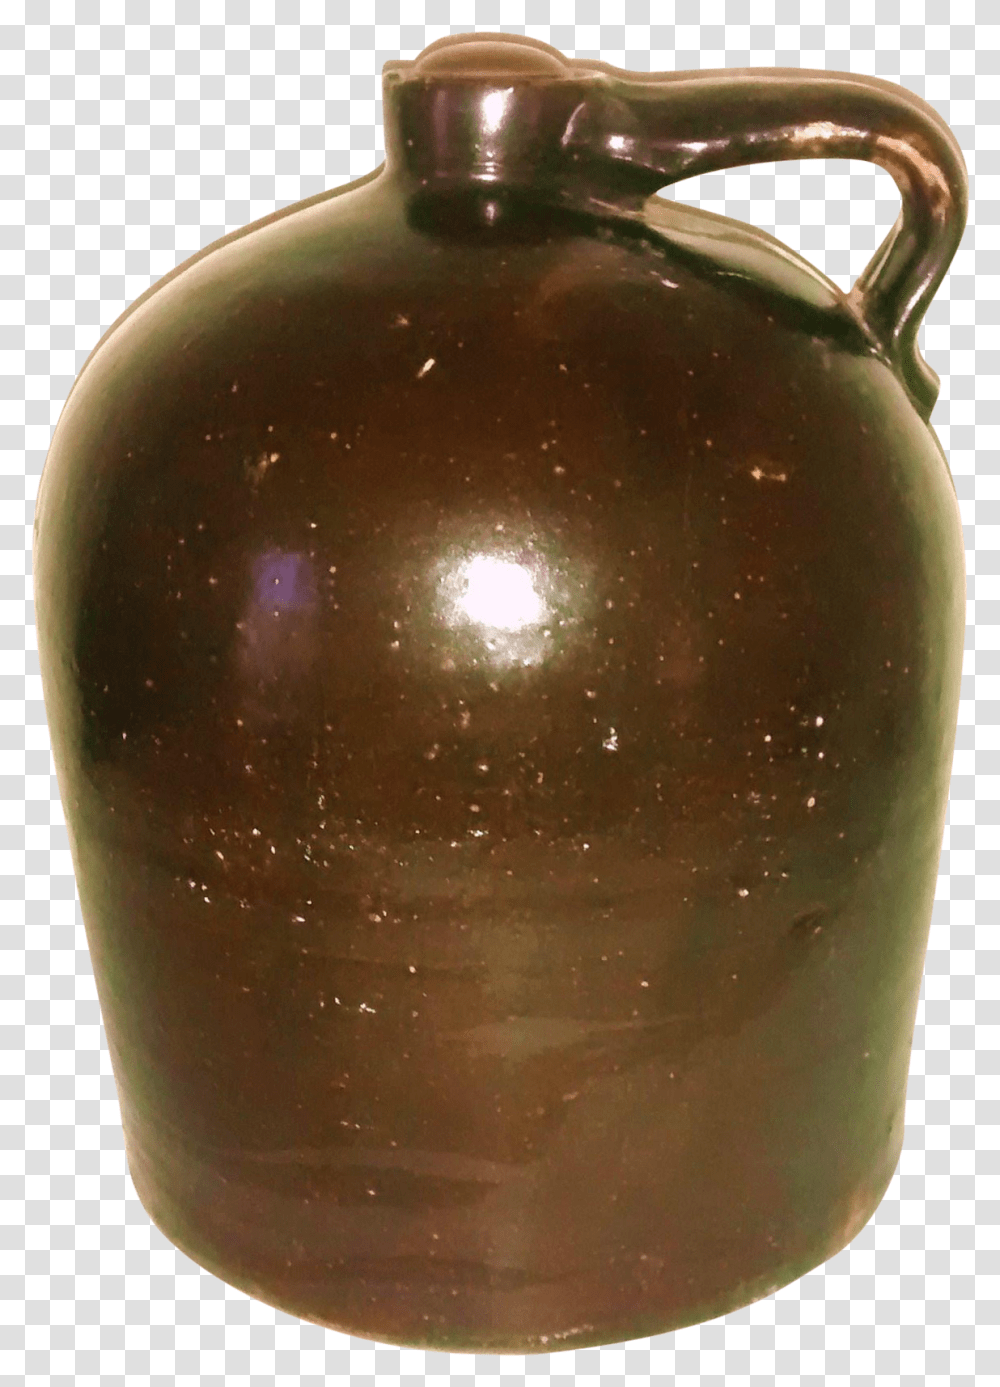 Earthenware, Pottery, Jug, Jar, Vase Transparent Png